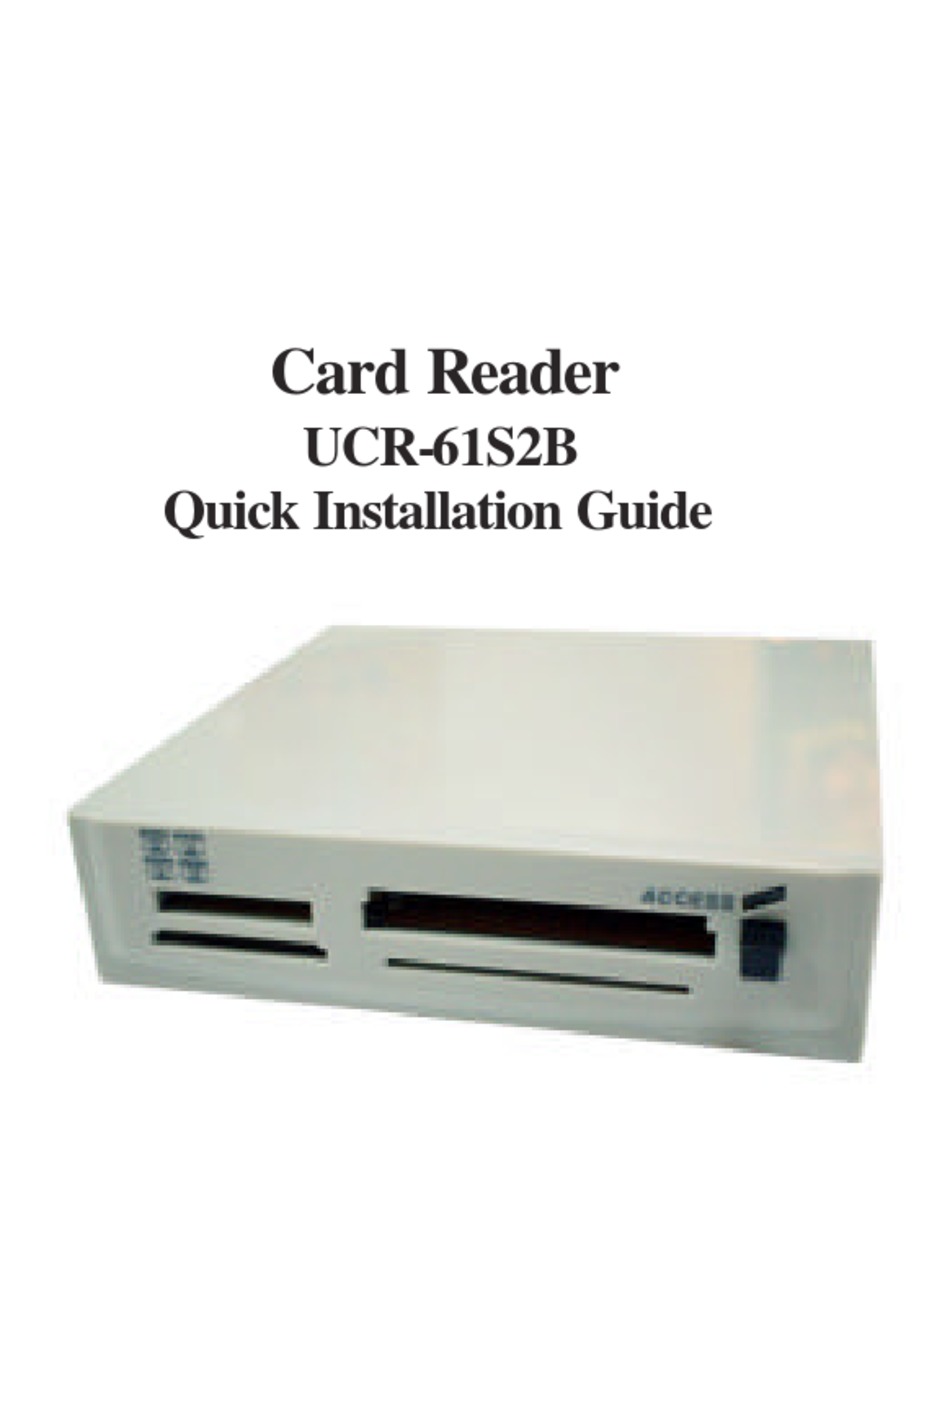 syntax usb card reader ucr 61